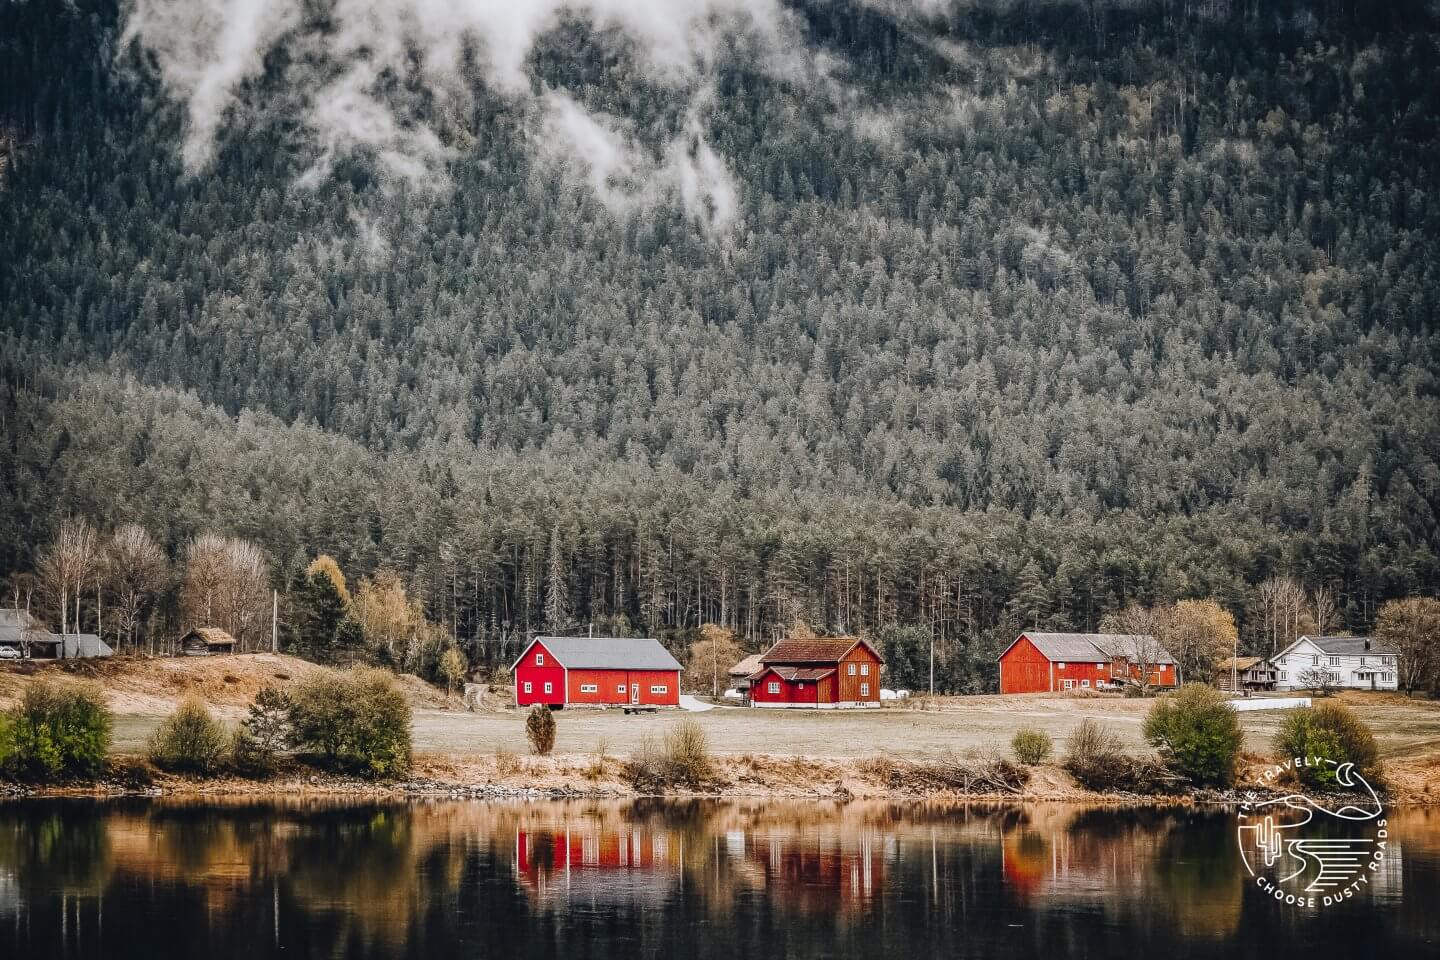 rote Häuschen am See - Willkommen in Skandinavien